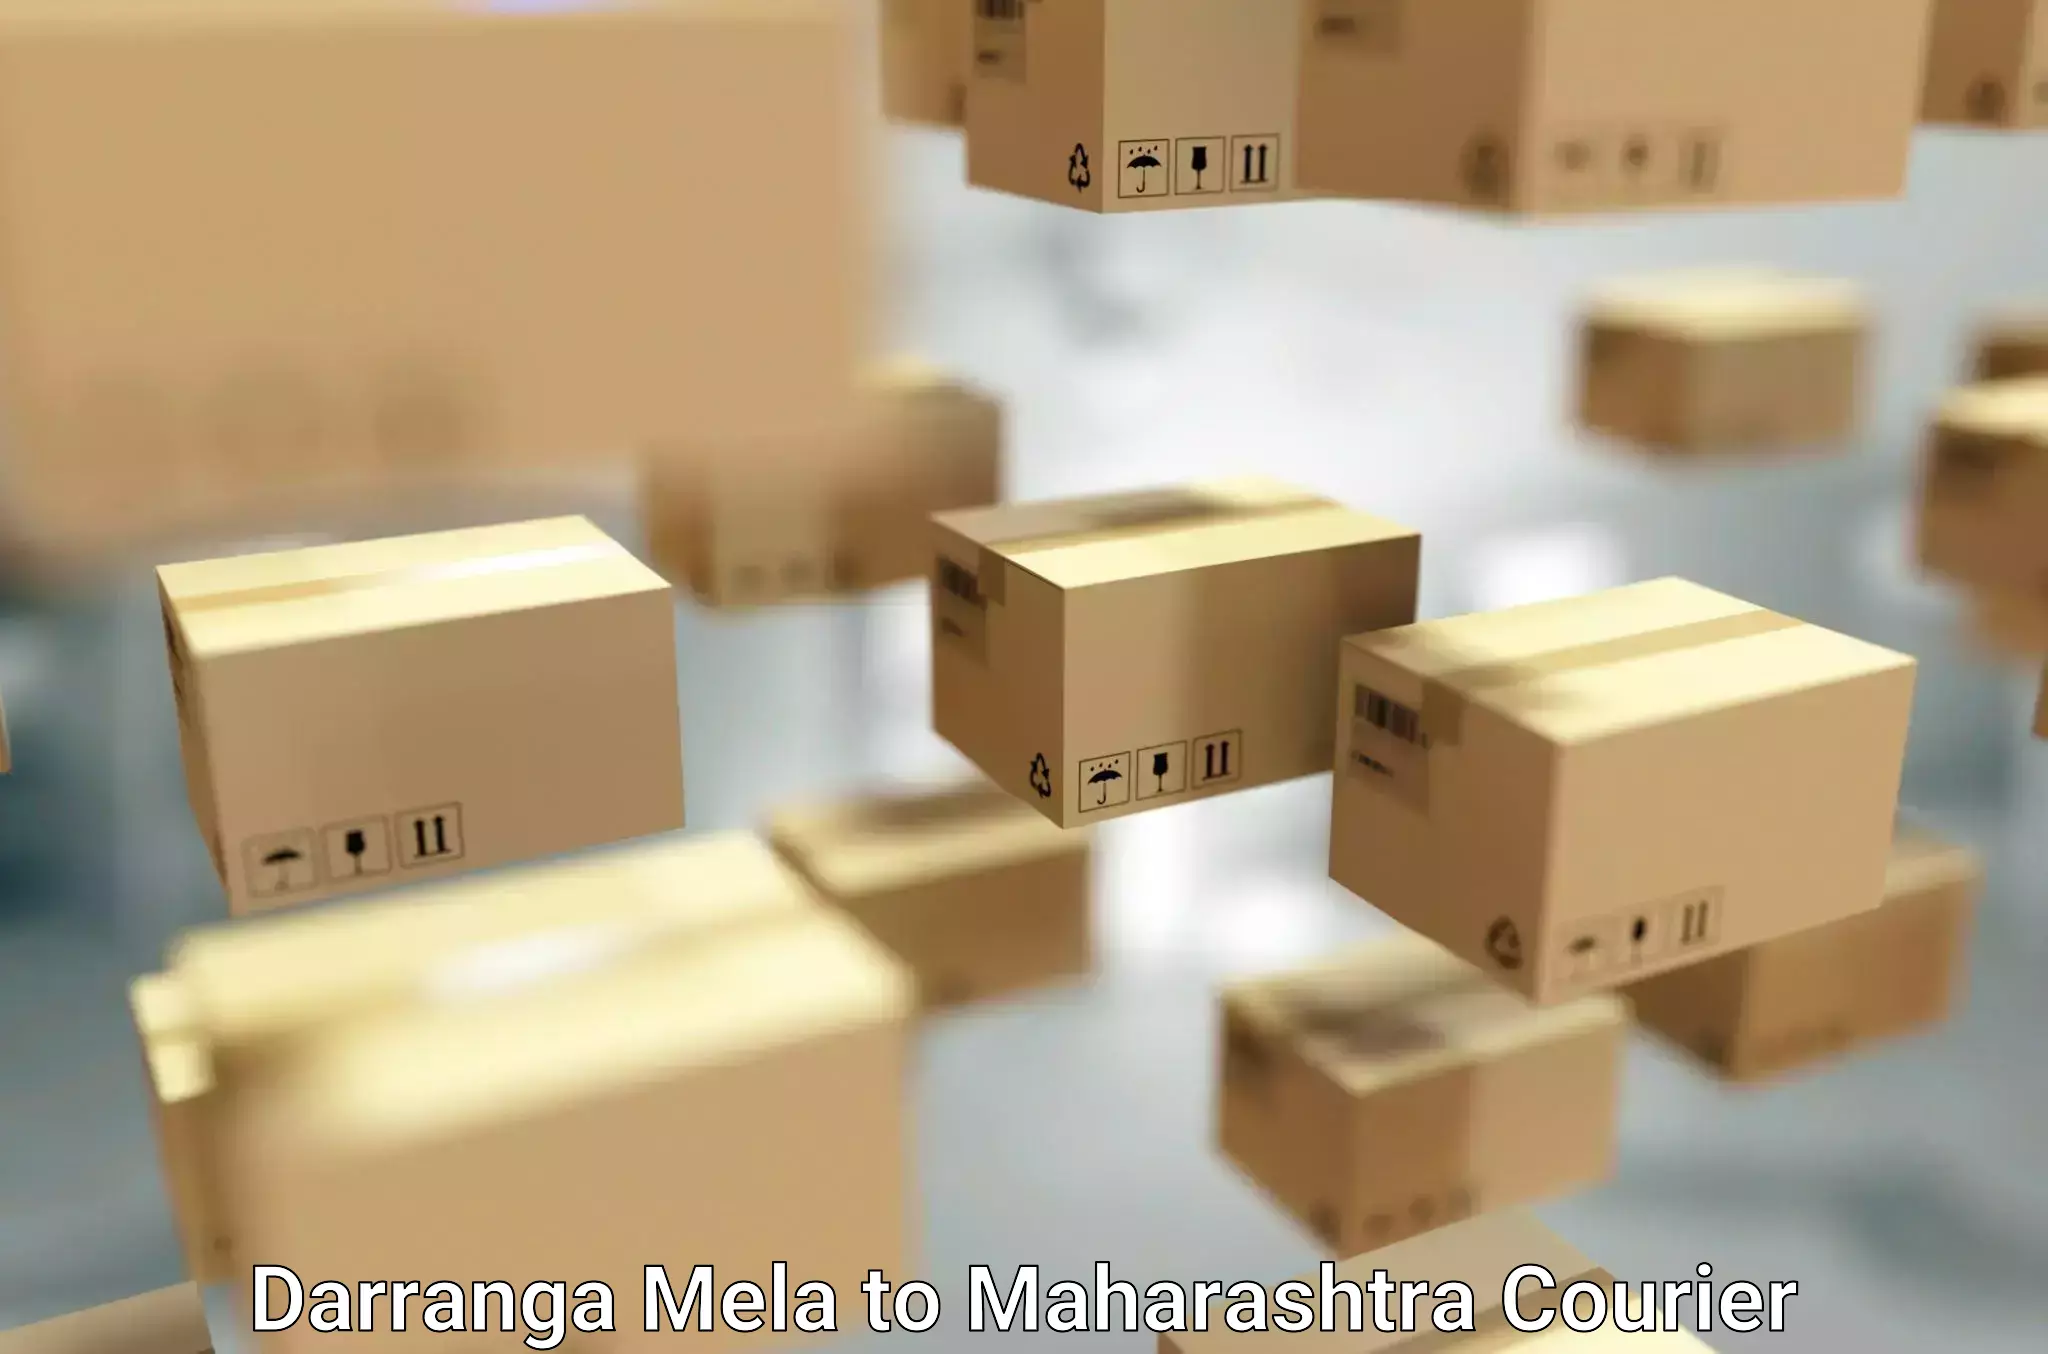 Efficient moving strategies Darranga Mela to Maharashtra